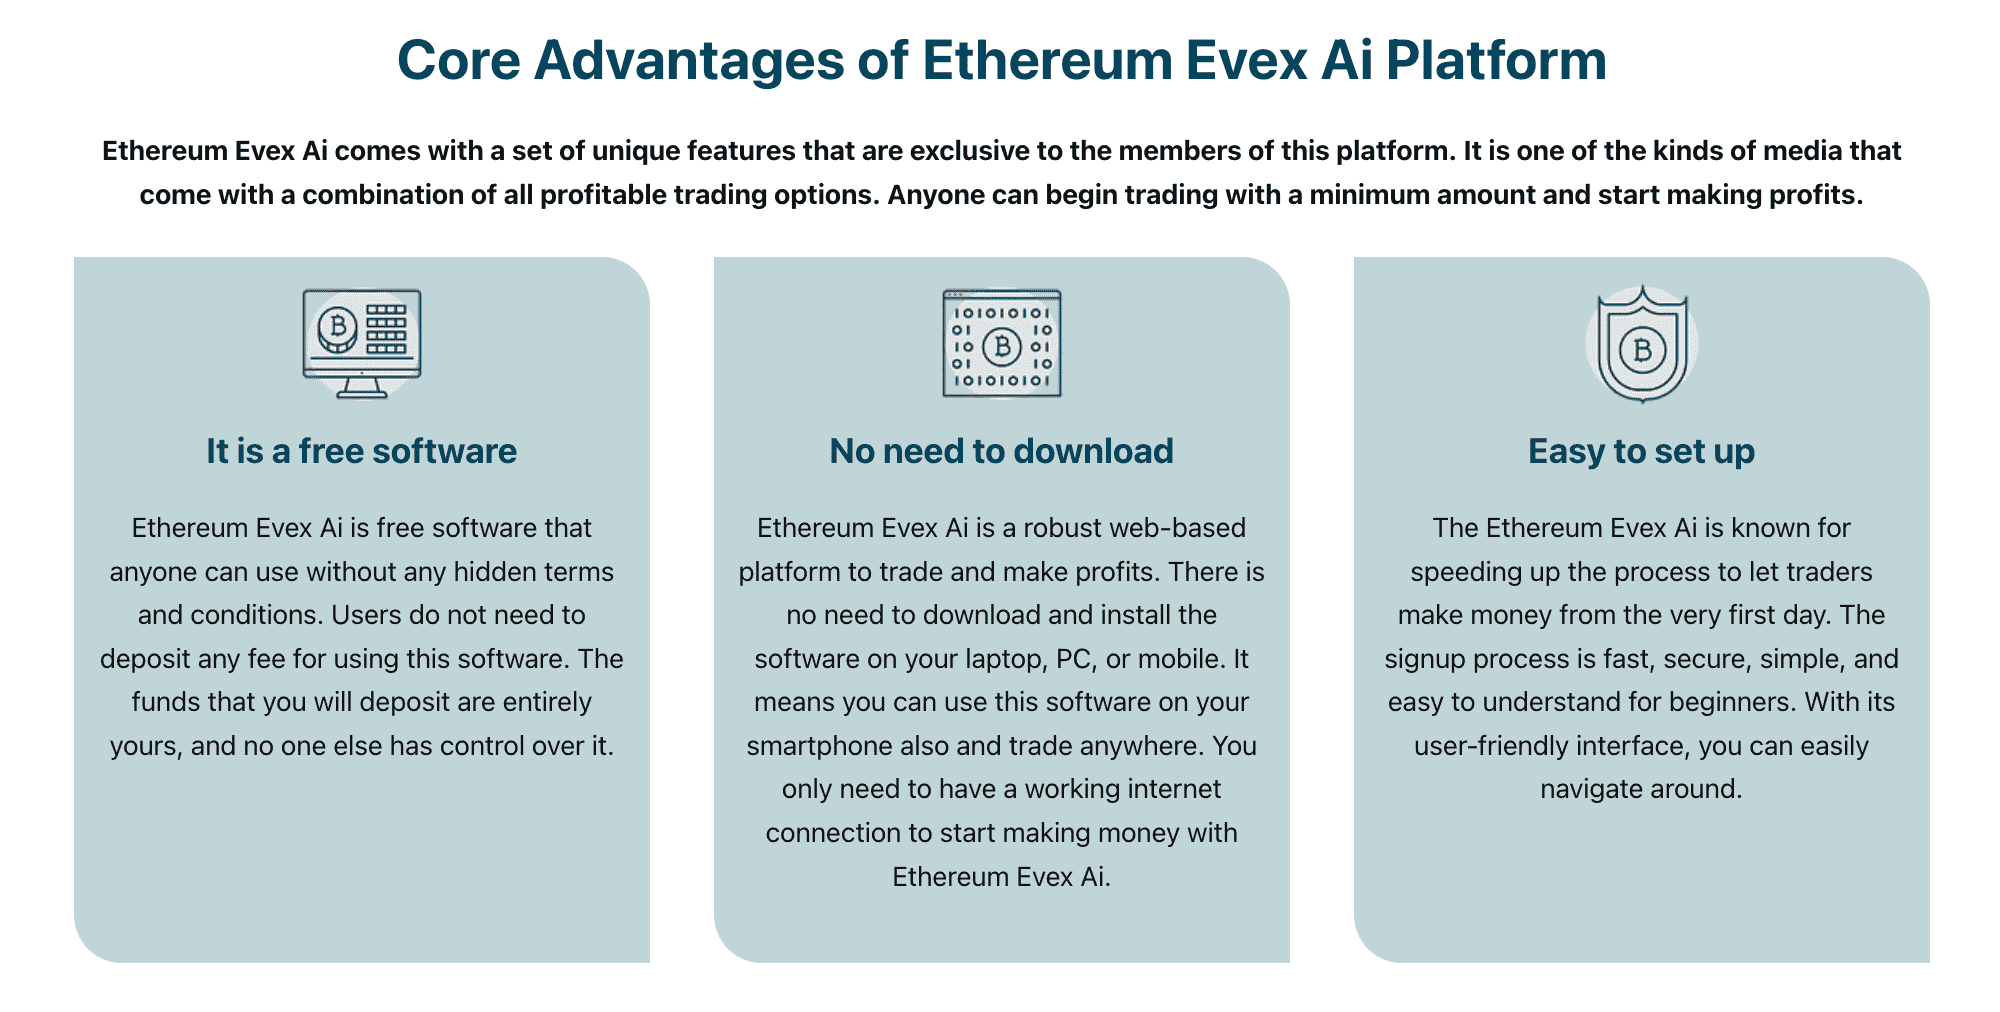 Pagrindiniai Ethereum Evex Ai platformos pranašumai  